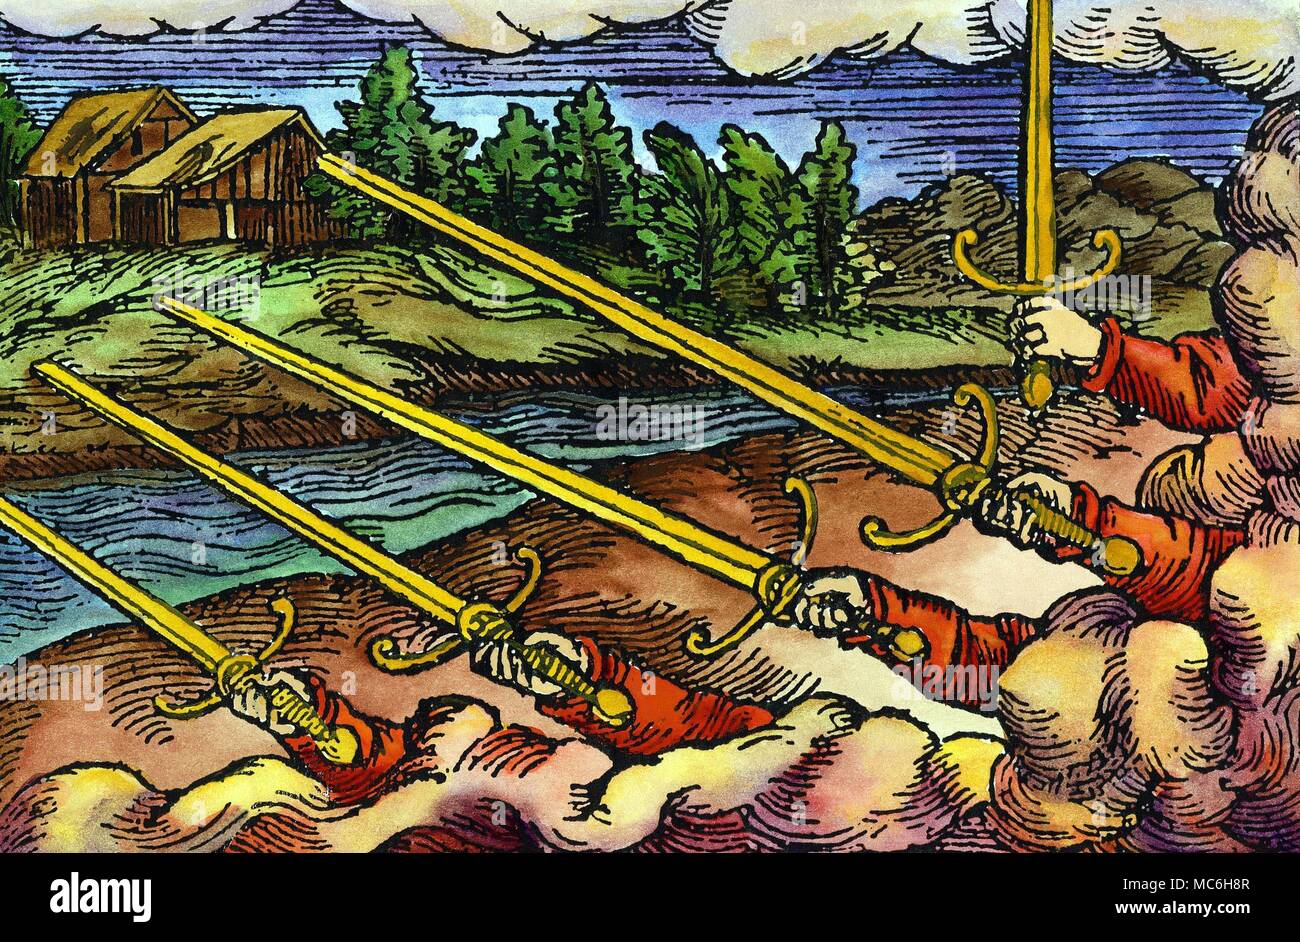 Profezia - Paracelso ventisette figura della serie di immagini aenigmatic o 'magical figure' dal Prognostications [1530], dell'alchimista svizzero e occultista Theophratus Bomastus von Hohenheim, chiamato Paracelso (1493 - 1541). Foto Stock